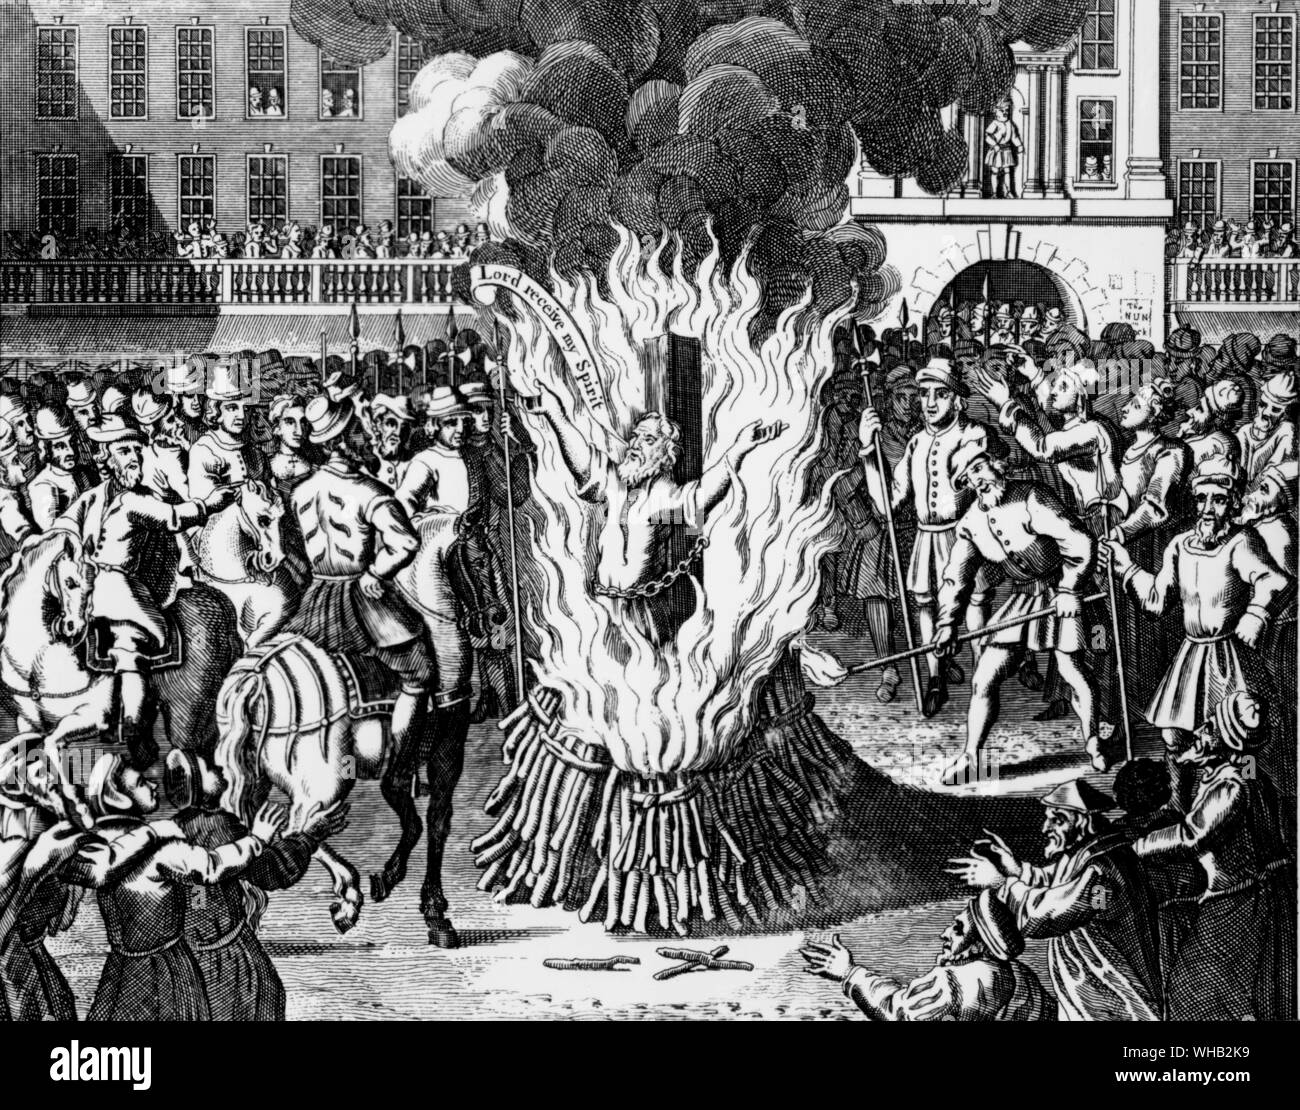 Die Verbrennung von Meister John Rogers - Vikar der St. Gräber & Reader von St. Paul's in London - 4. Februar 1555. Foxe's Buch der Märtyrer, Kapitel 16. Stockfoto